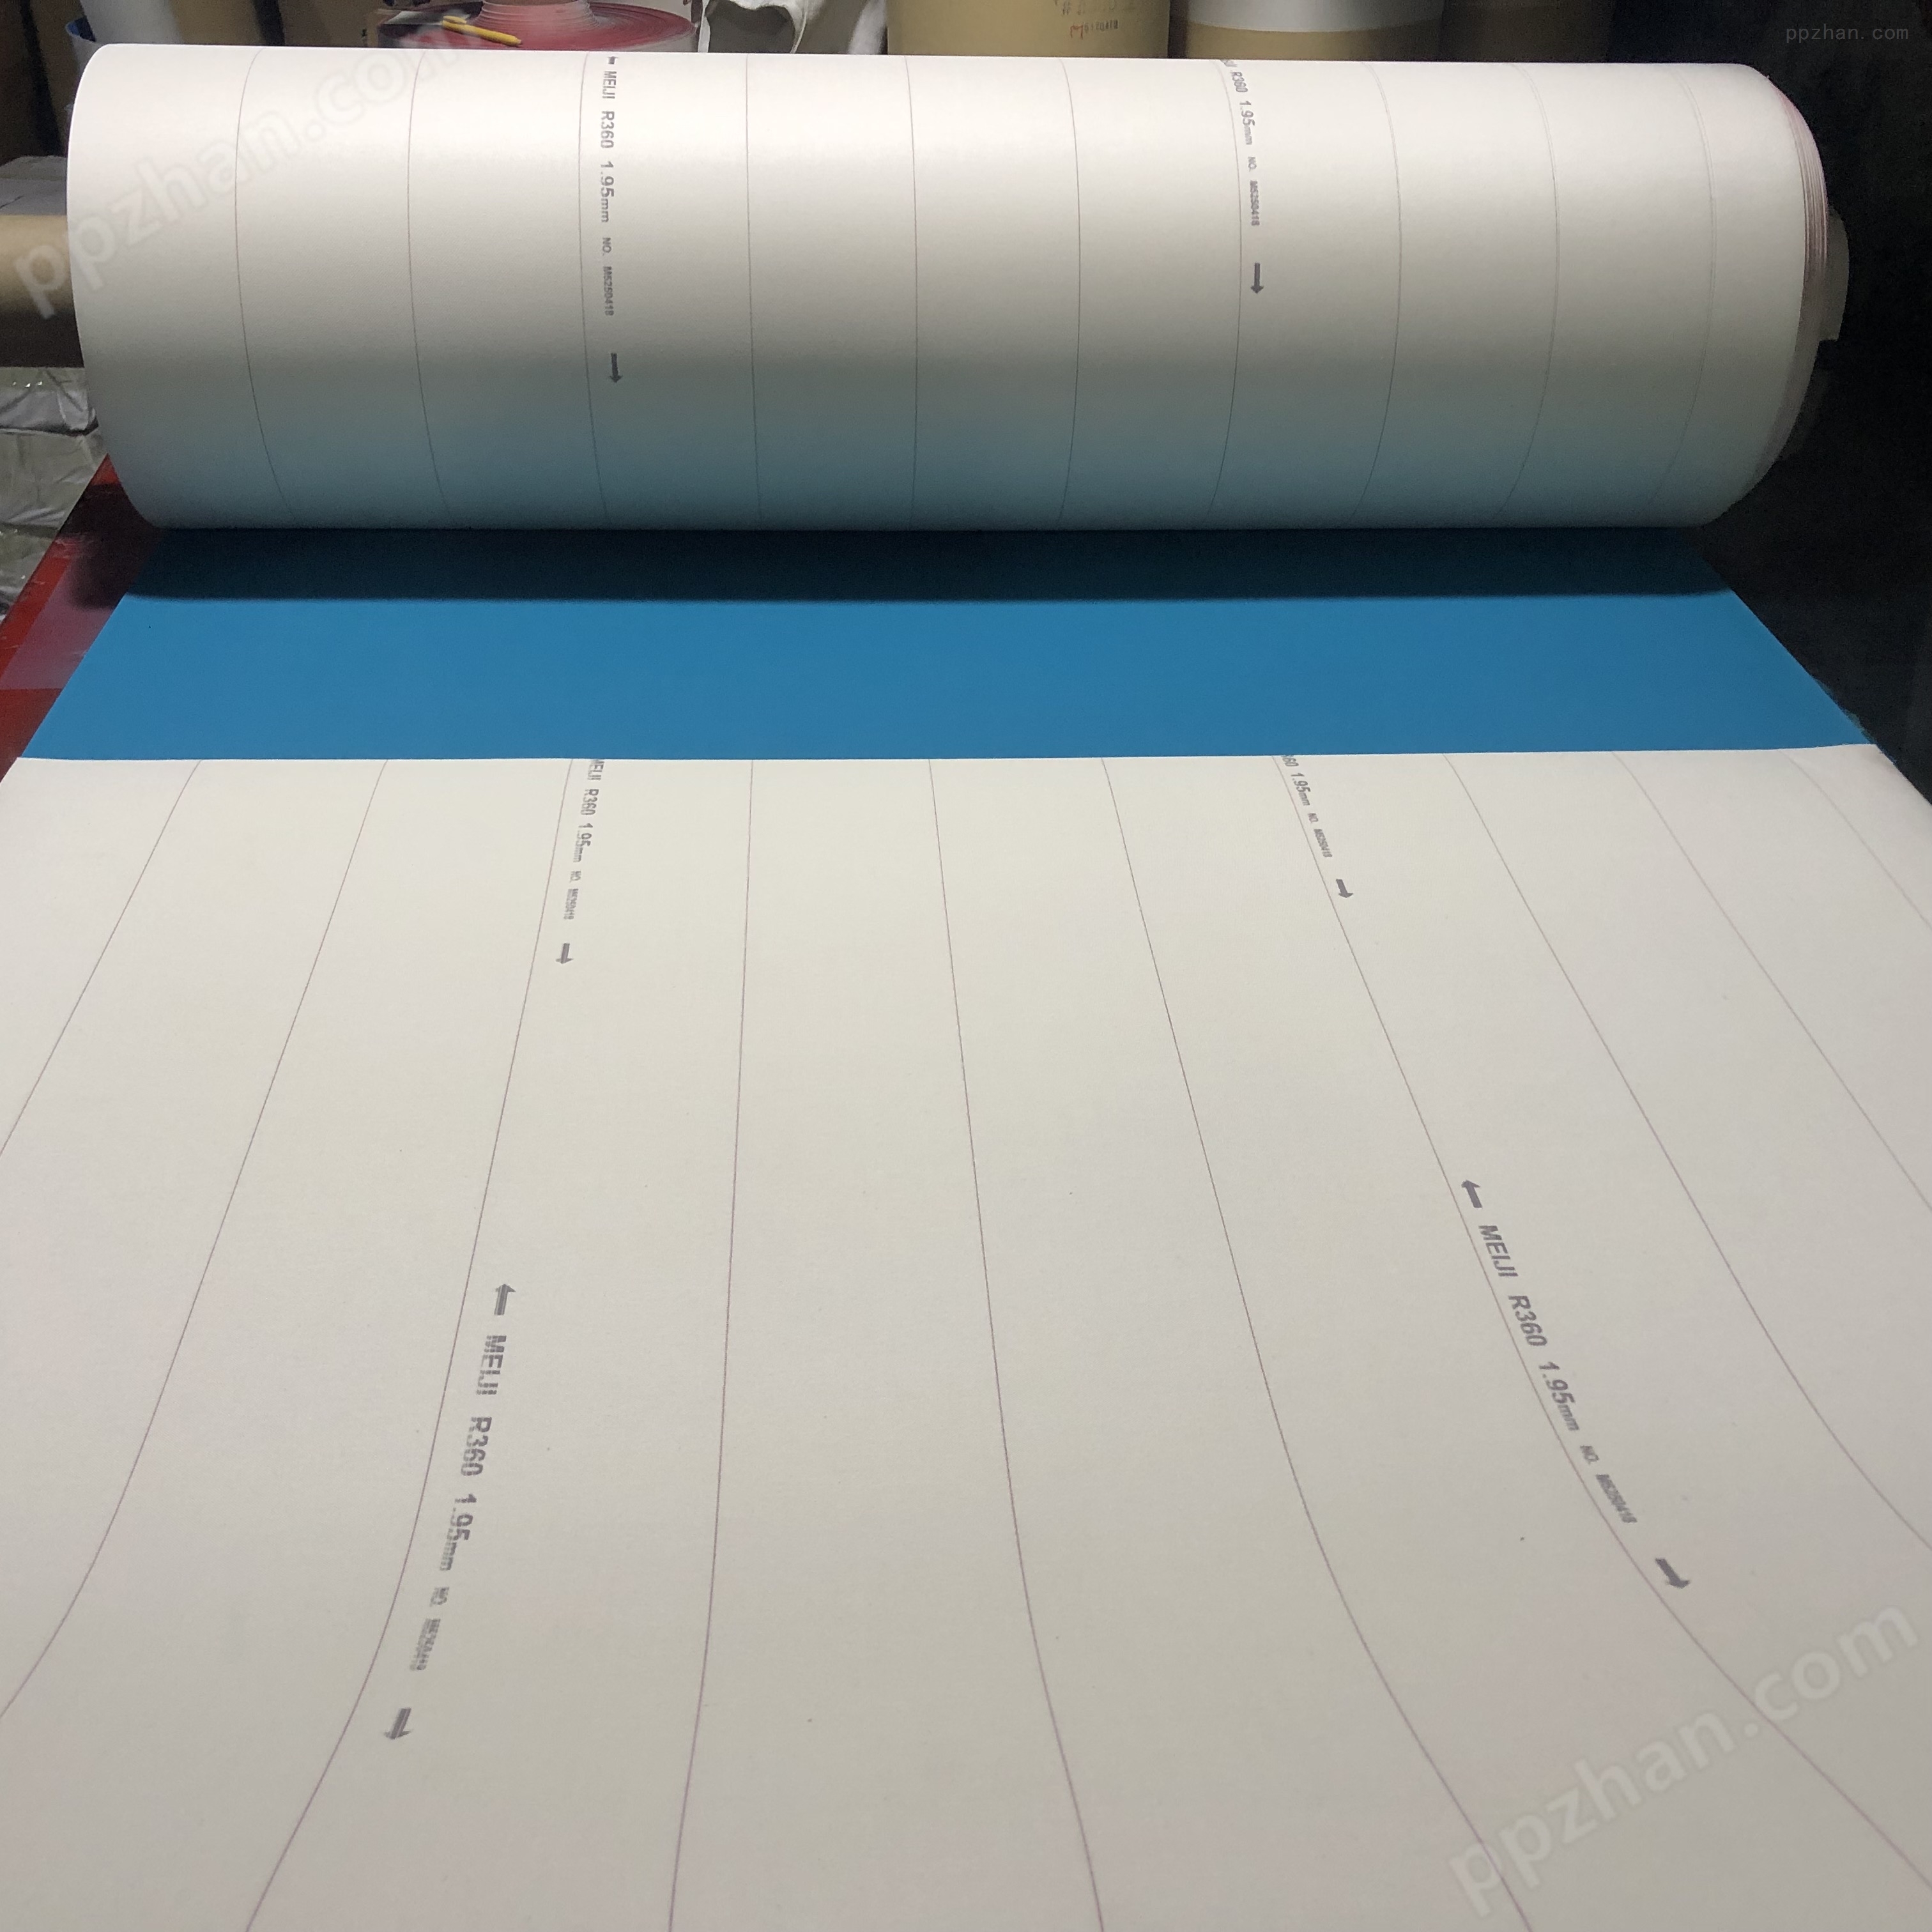 印刷橡皮布胶印机明治橡皮布